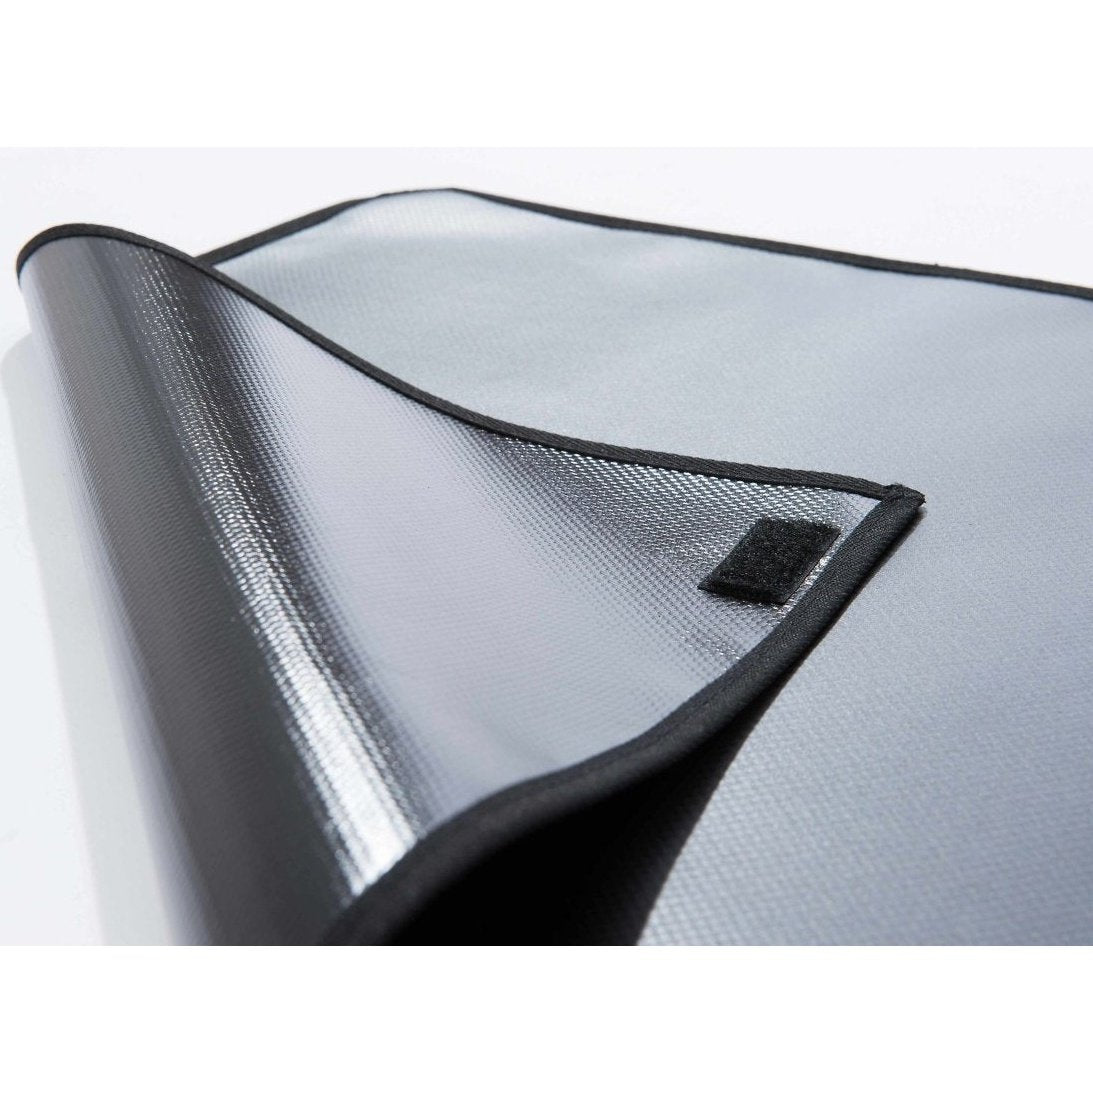 Kleinmetall Starliner Kofferraumwanne für Peugeot 307 SW schwarz tierxxl-de